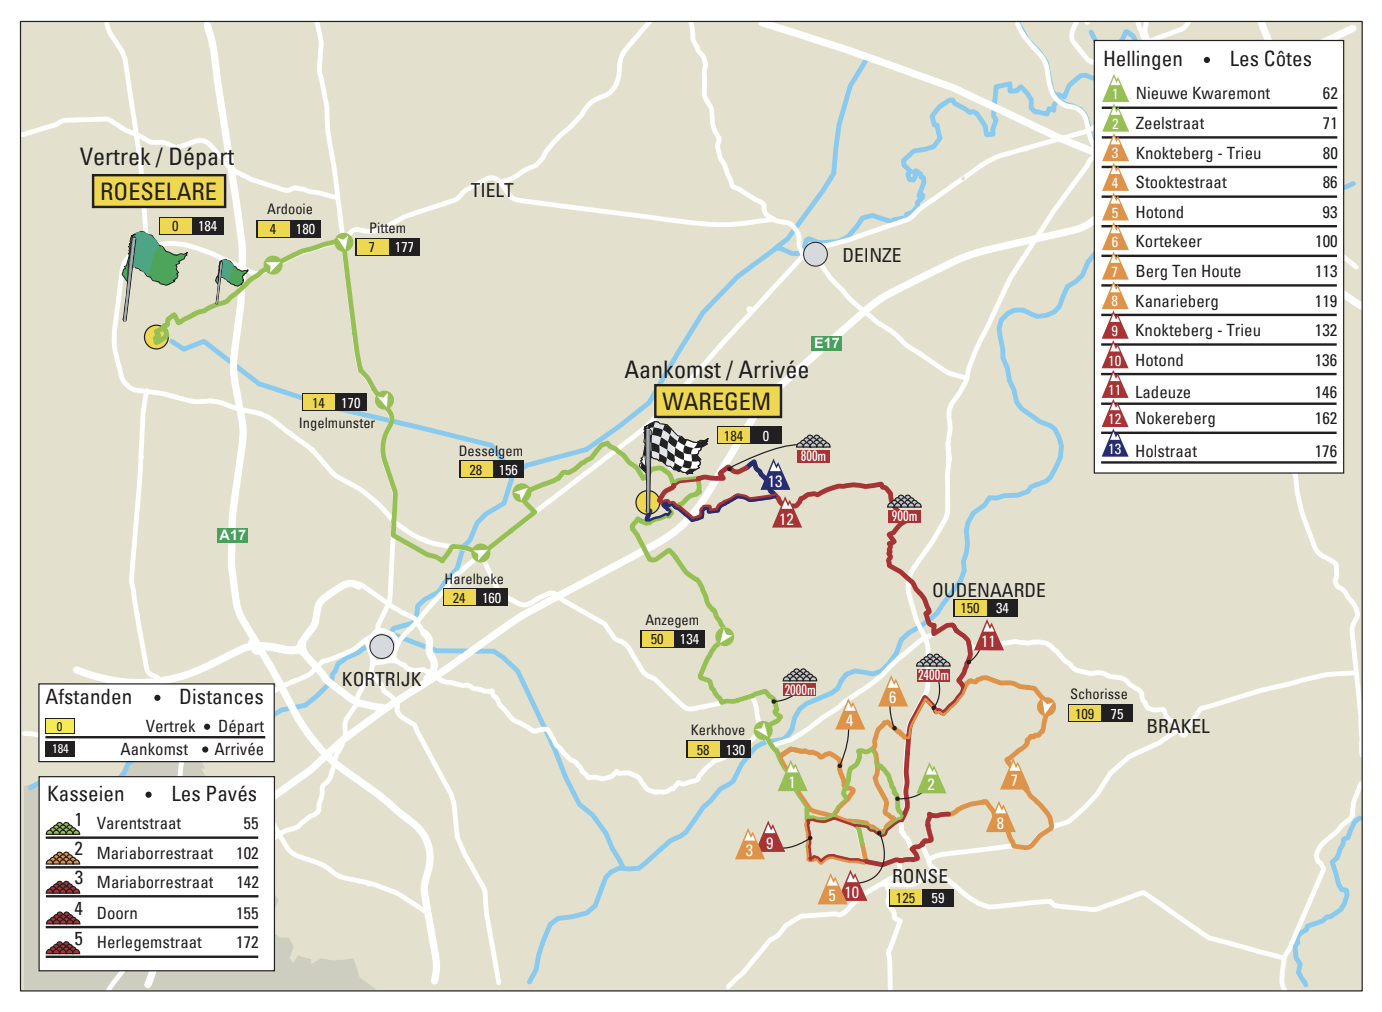 Dwars door Vlaanderen 2022 map